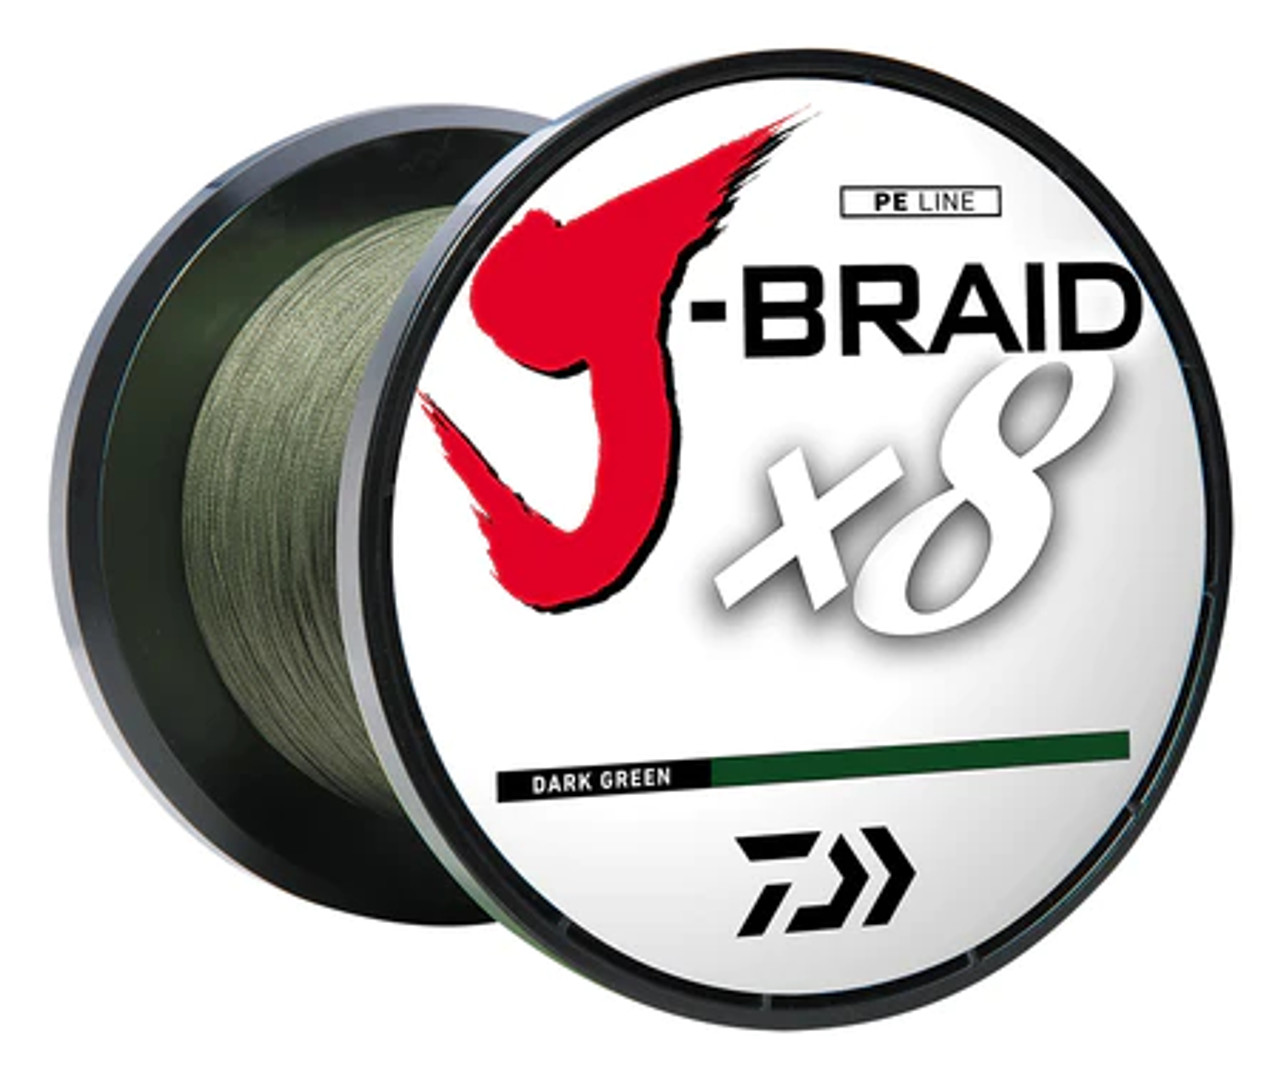 DAIWA J-BRAID X8 300YD FILLER SPOOL